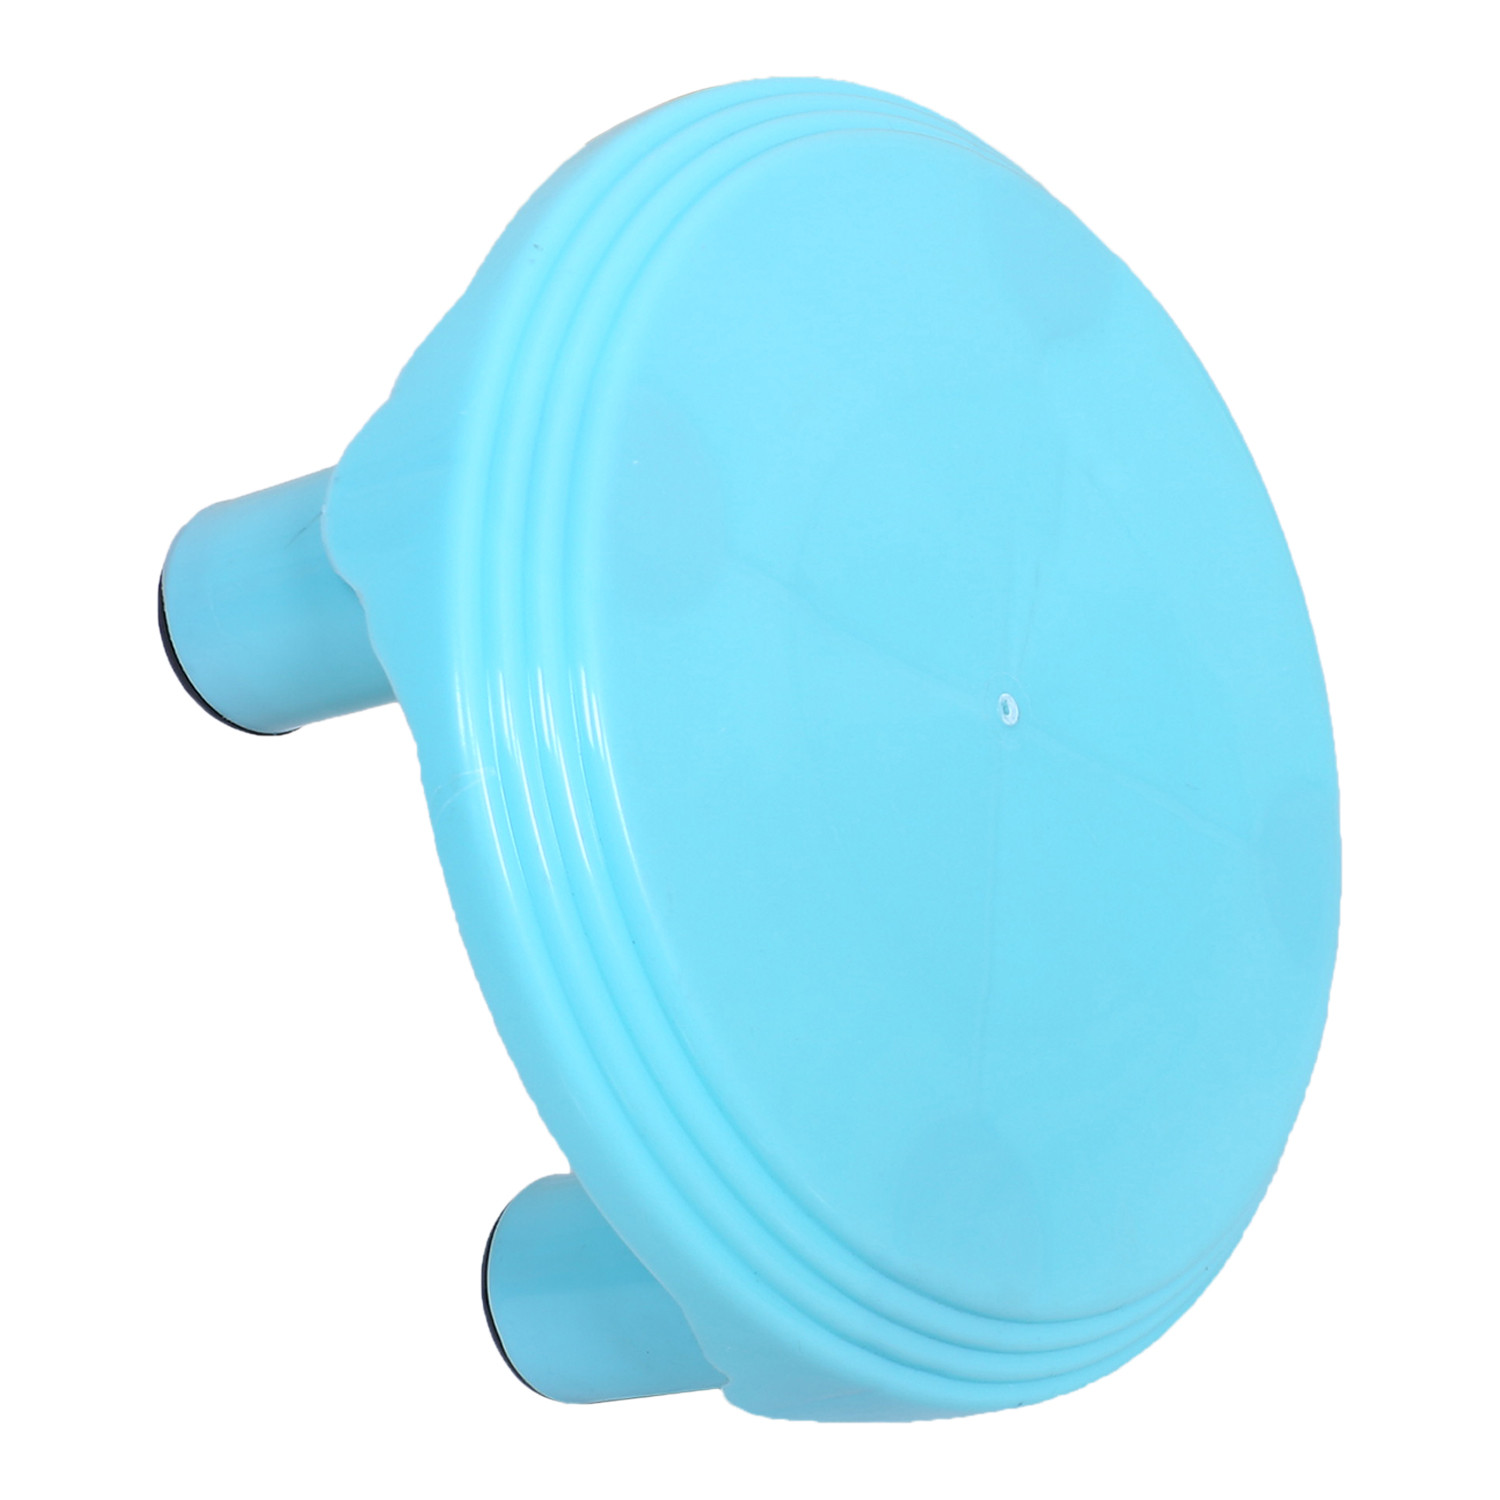 Kuber Industries Bathroom Stool|Plastic Stool|Anti-slip Bathing Stool|Stool for Senior Citizen|Patla for Bathroom|Pack of 2 (Mint Green & Sky Blue)